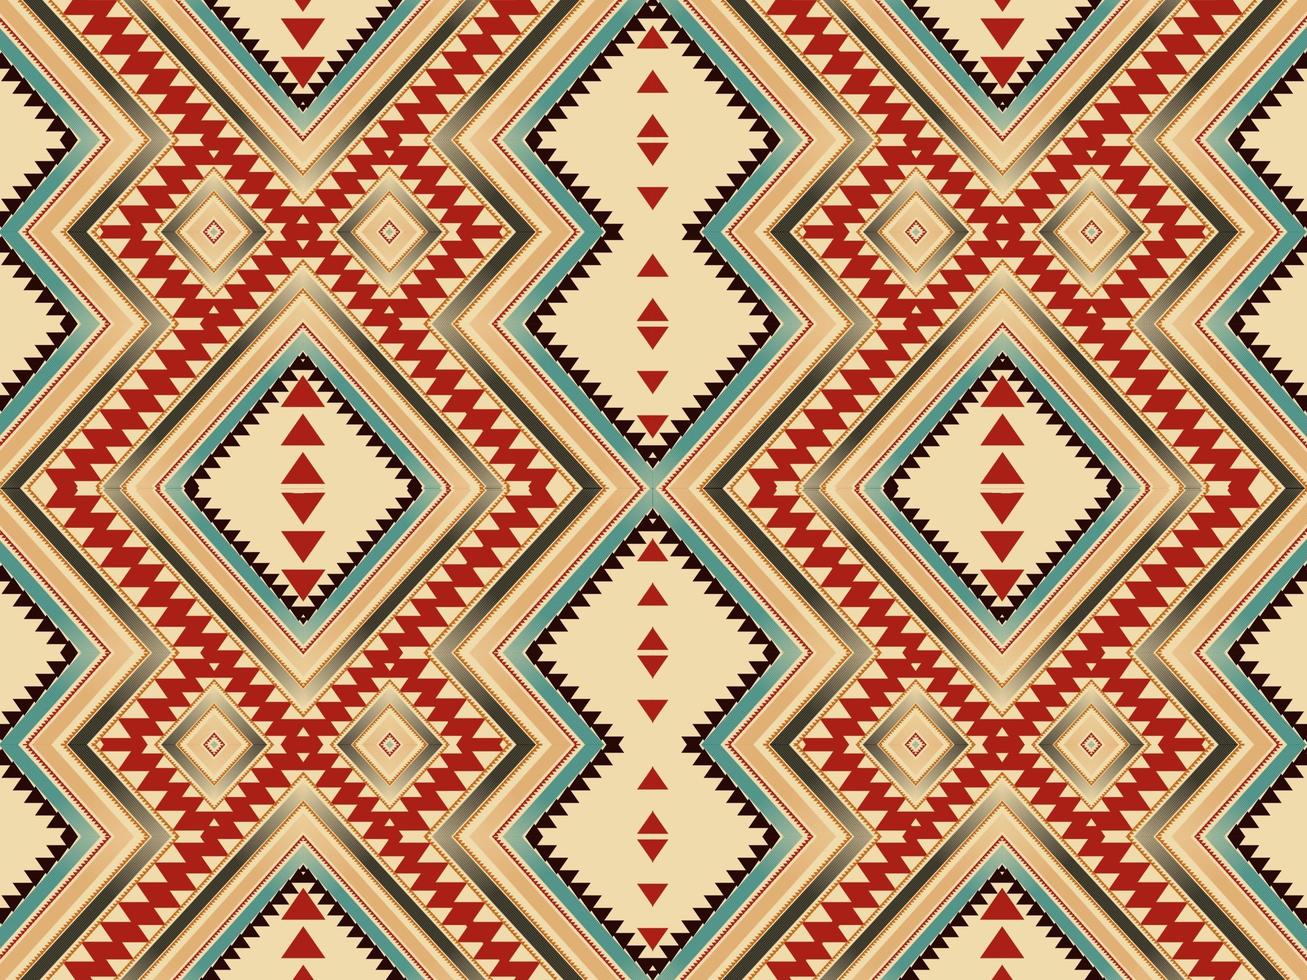 padrões geométricos estampas de tecido ikat padrões mexicanos nativos americanos abstrato foto